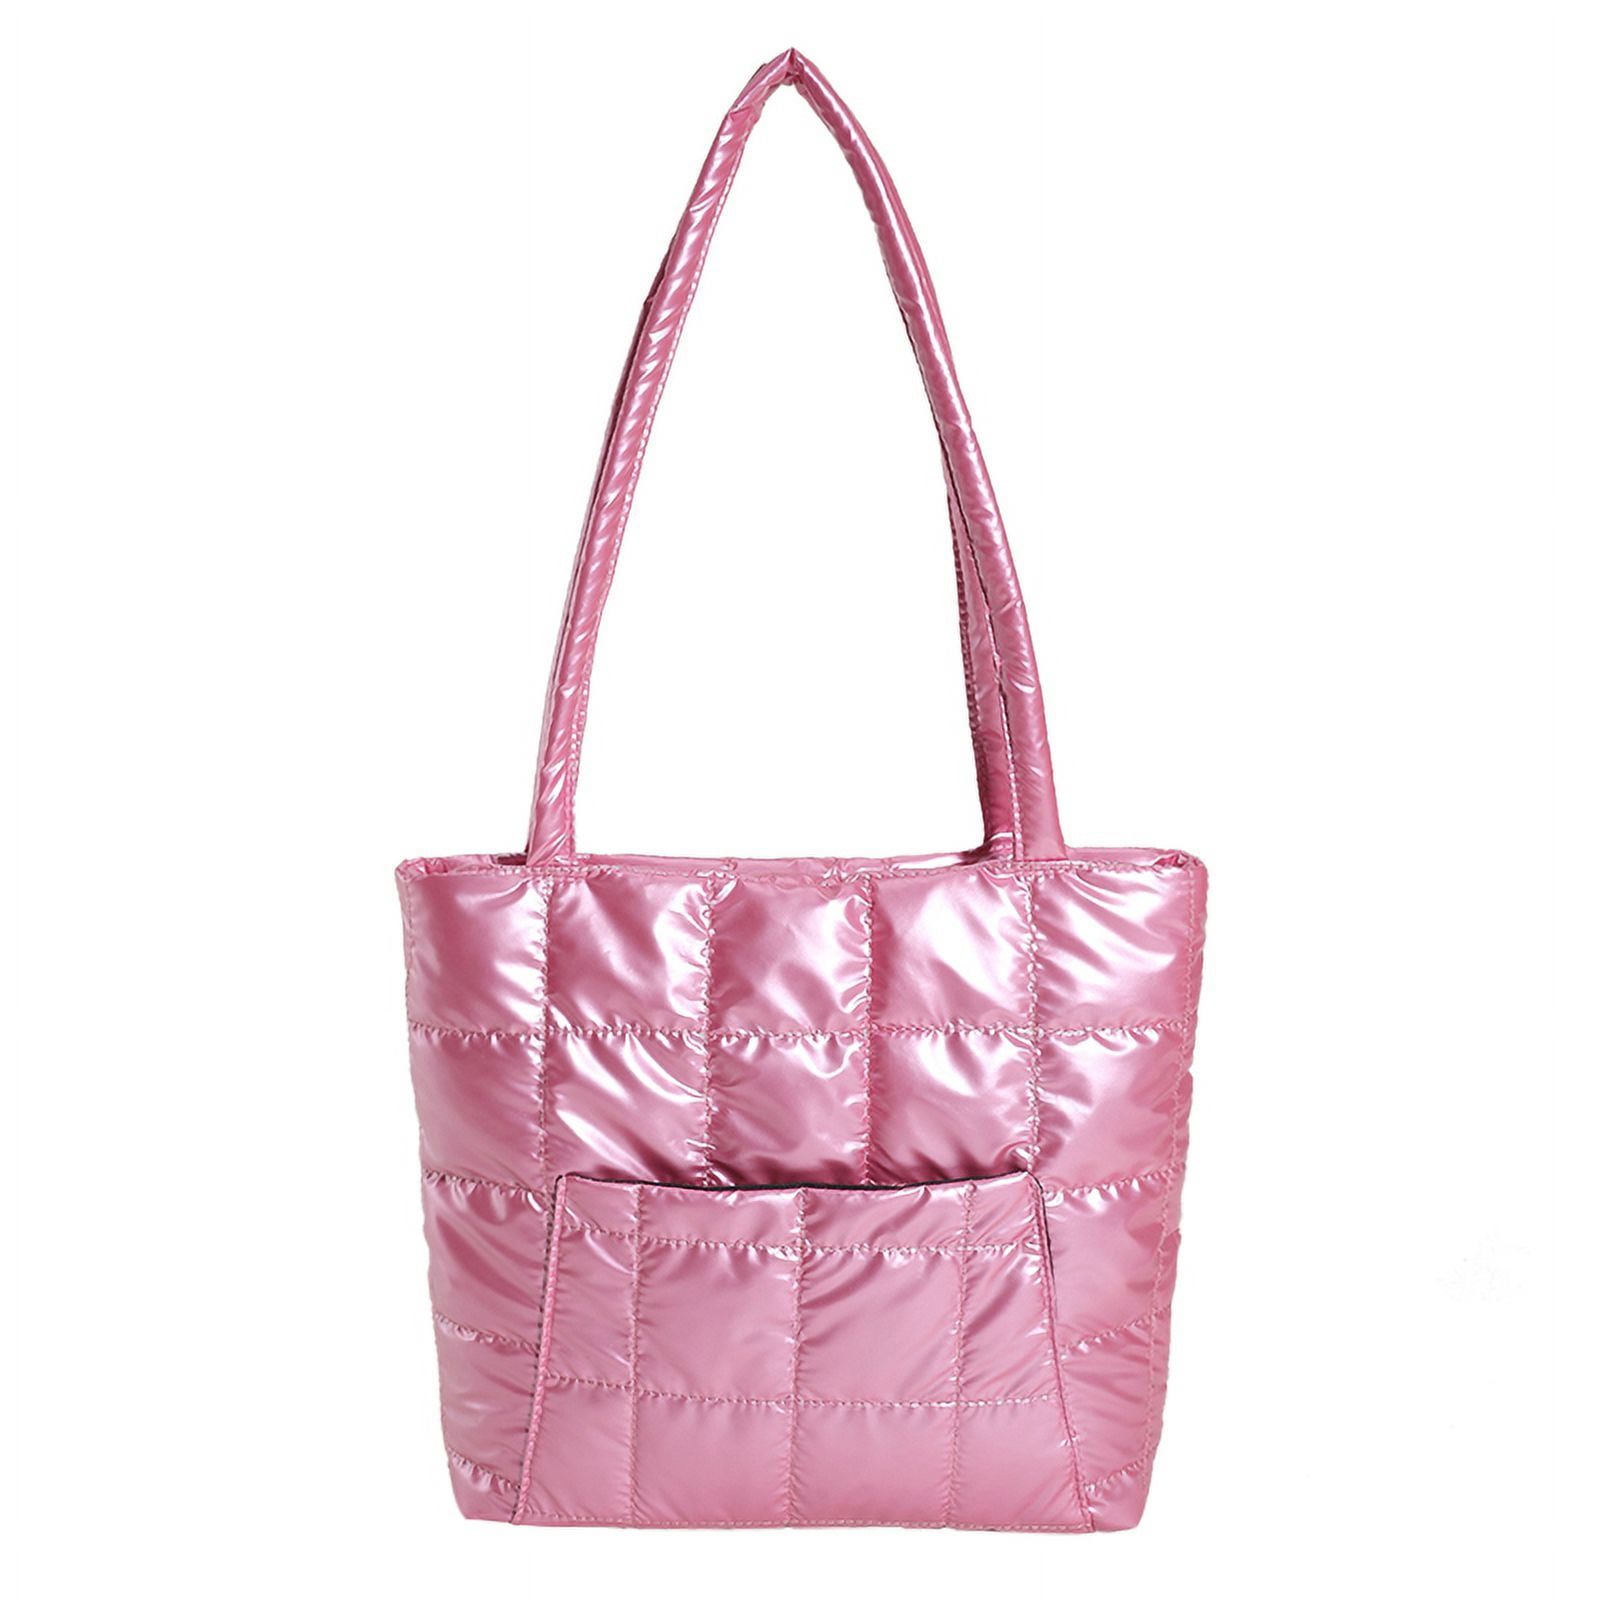 Vakind Women Winter Puffer Shoulder Bag Large Capacity Handbag Bag Tote Bag  (Pink) 